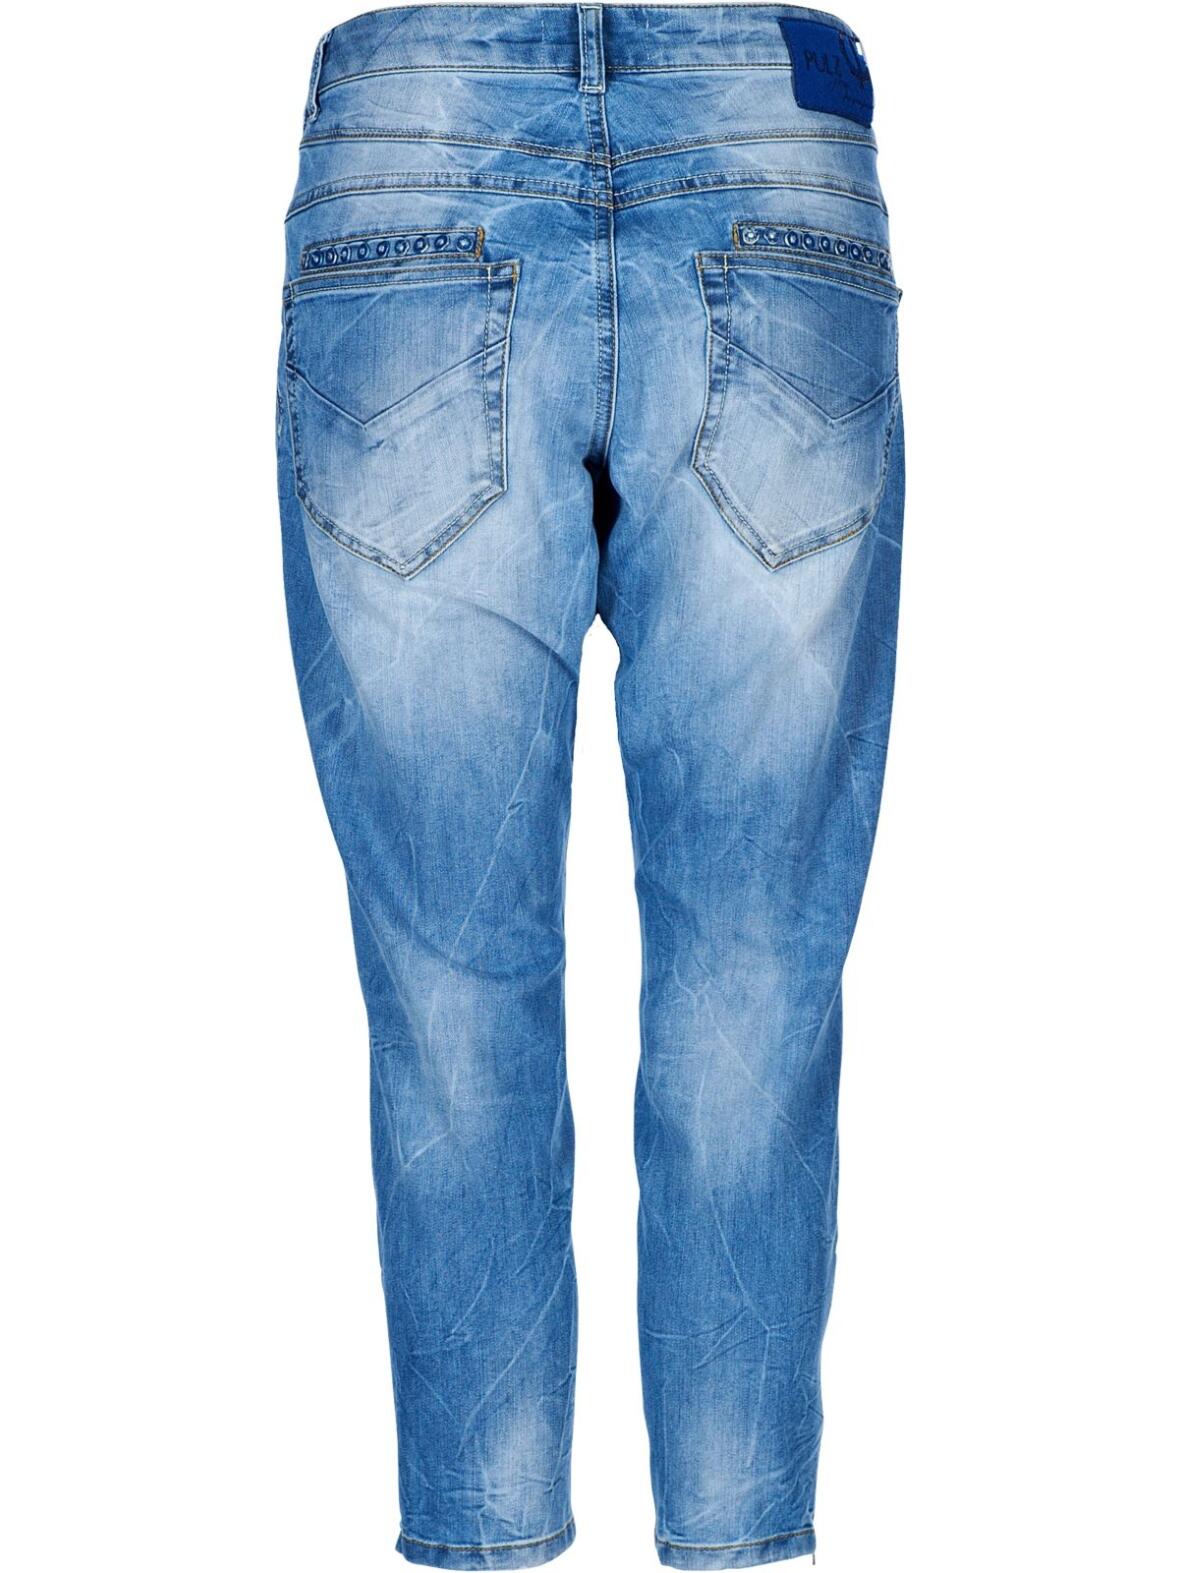 Boutique Dorthe Pulz Malvina jeans